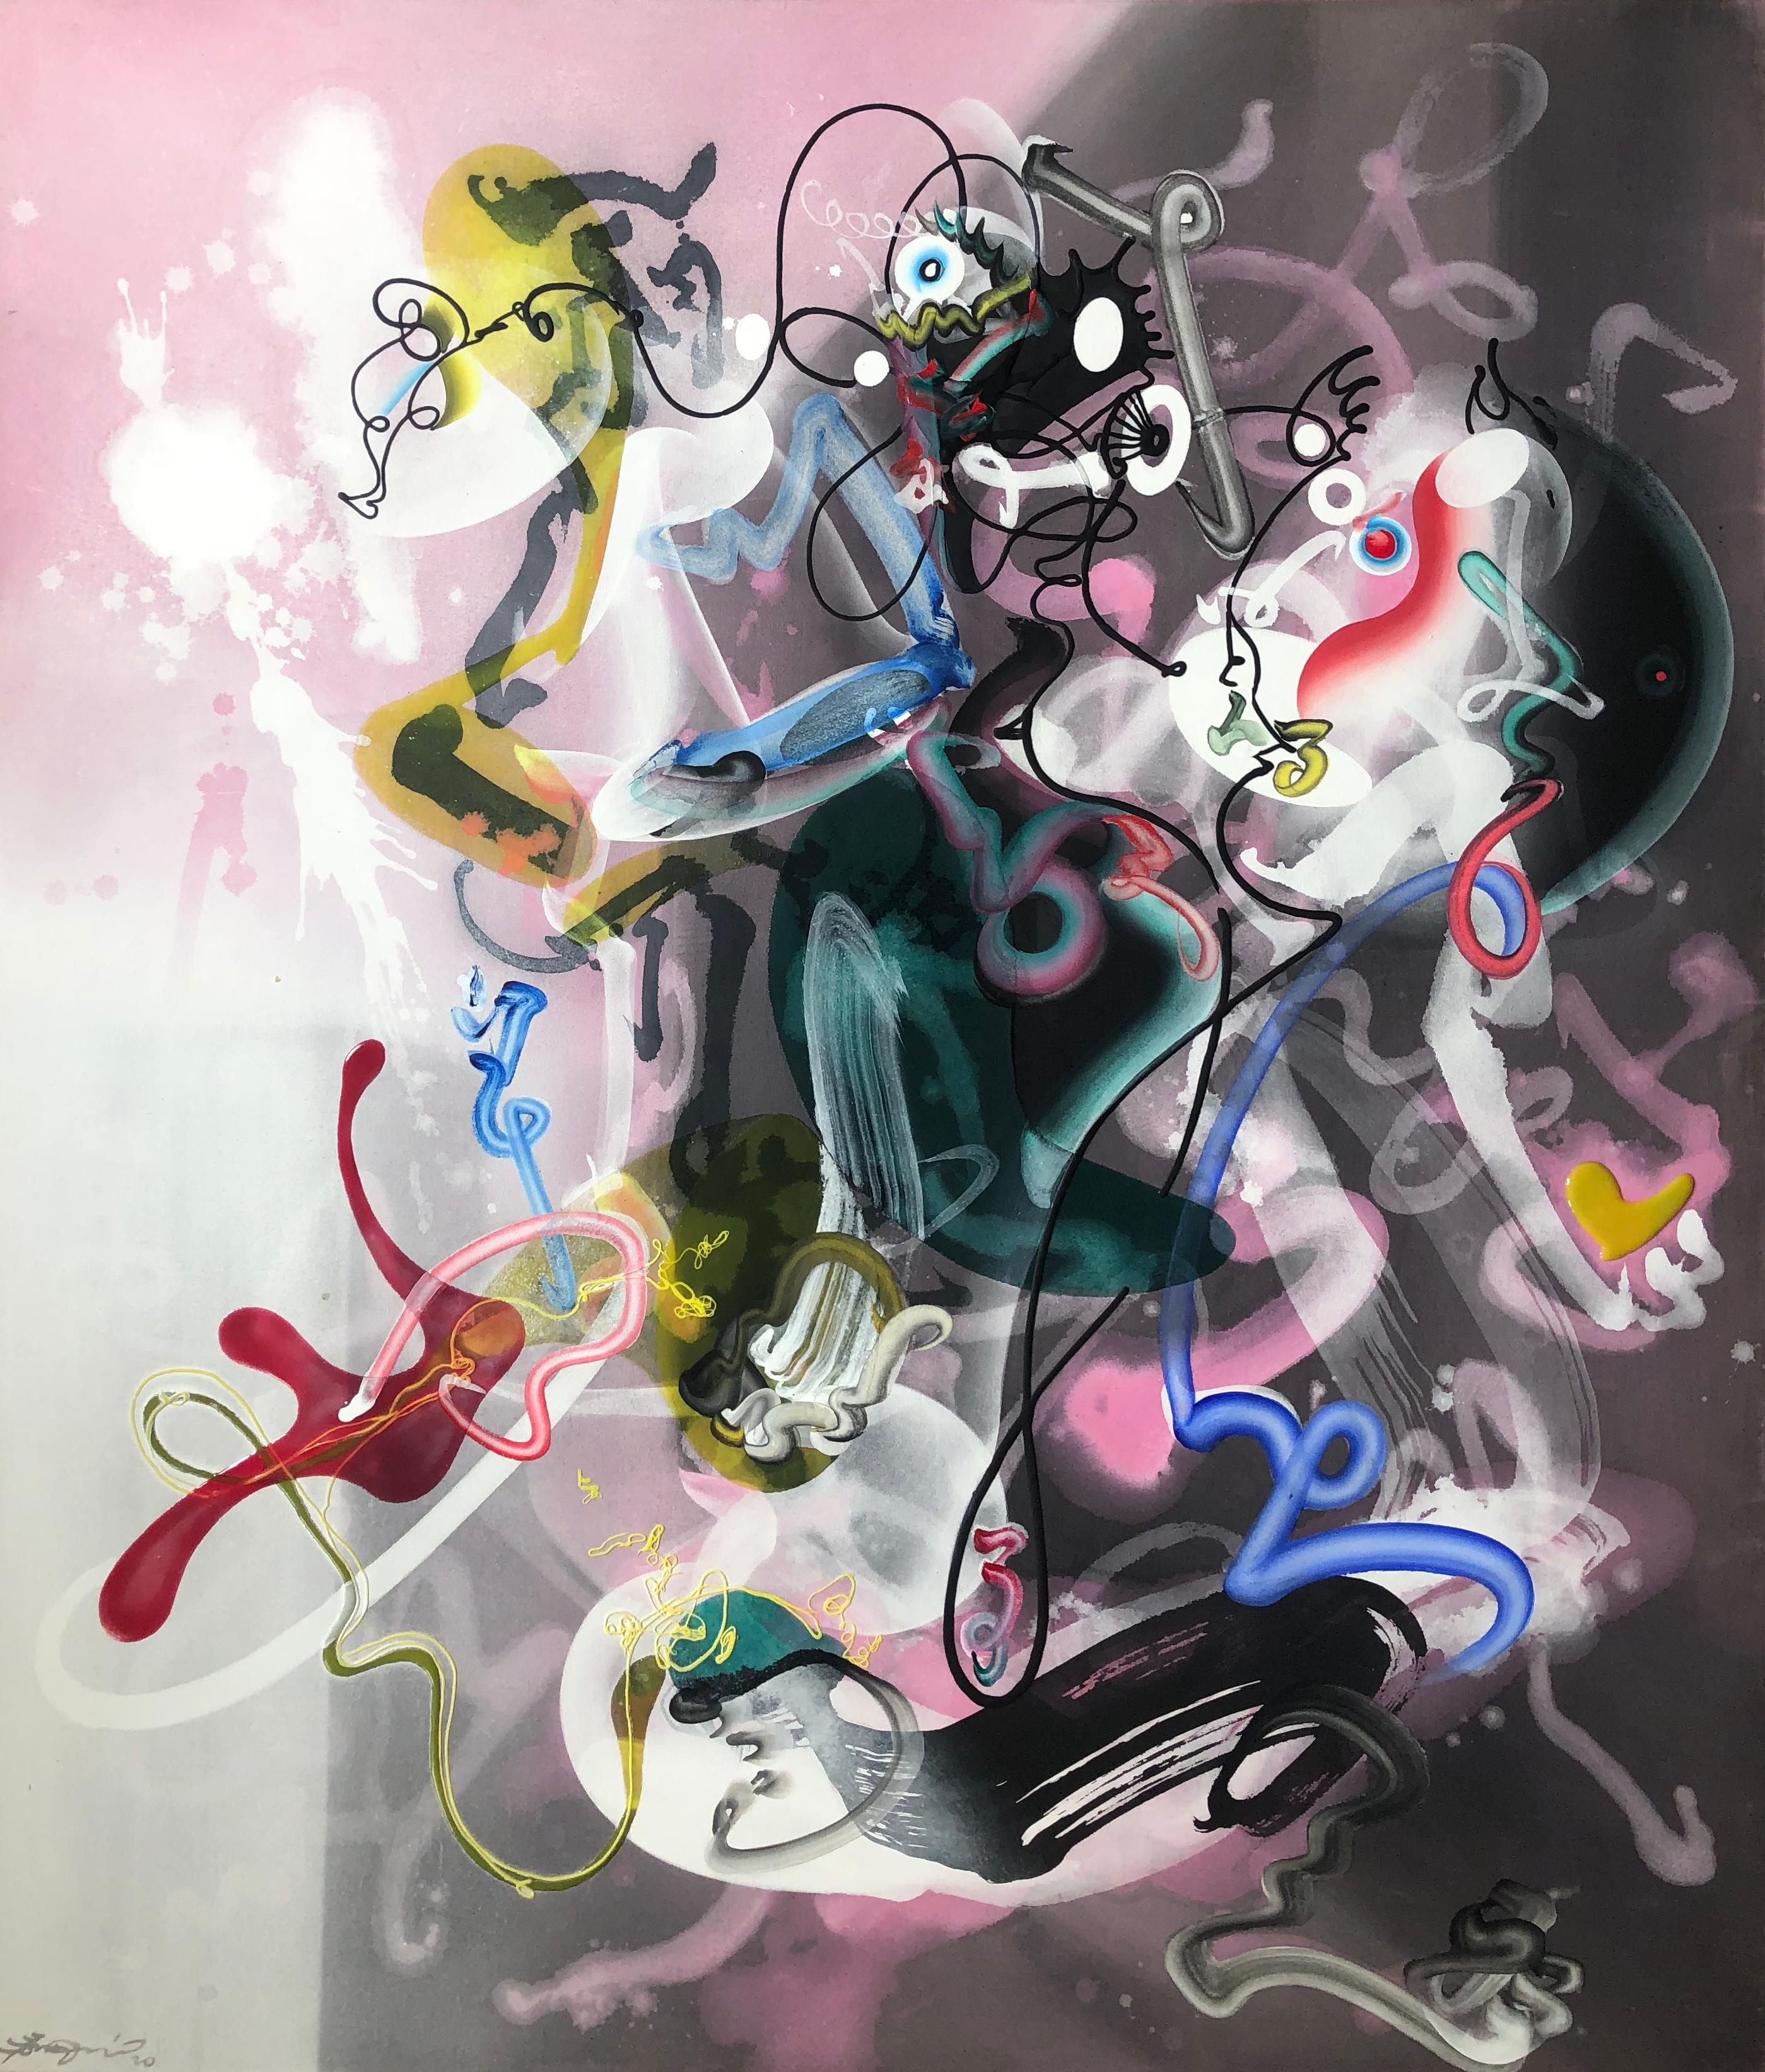 Nirvana, pink and gray abstract painting - Mixed Media Art by Jongwang Lee